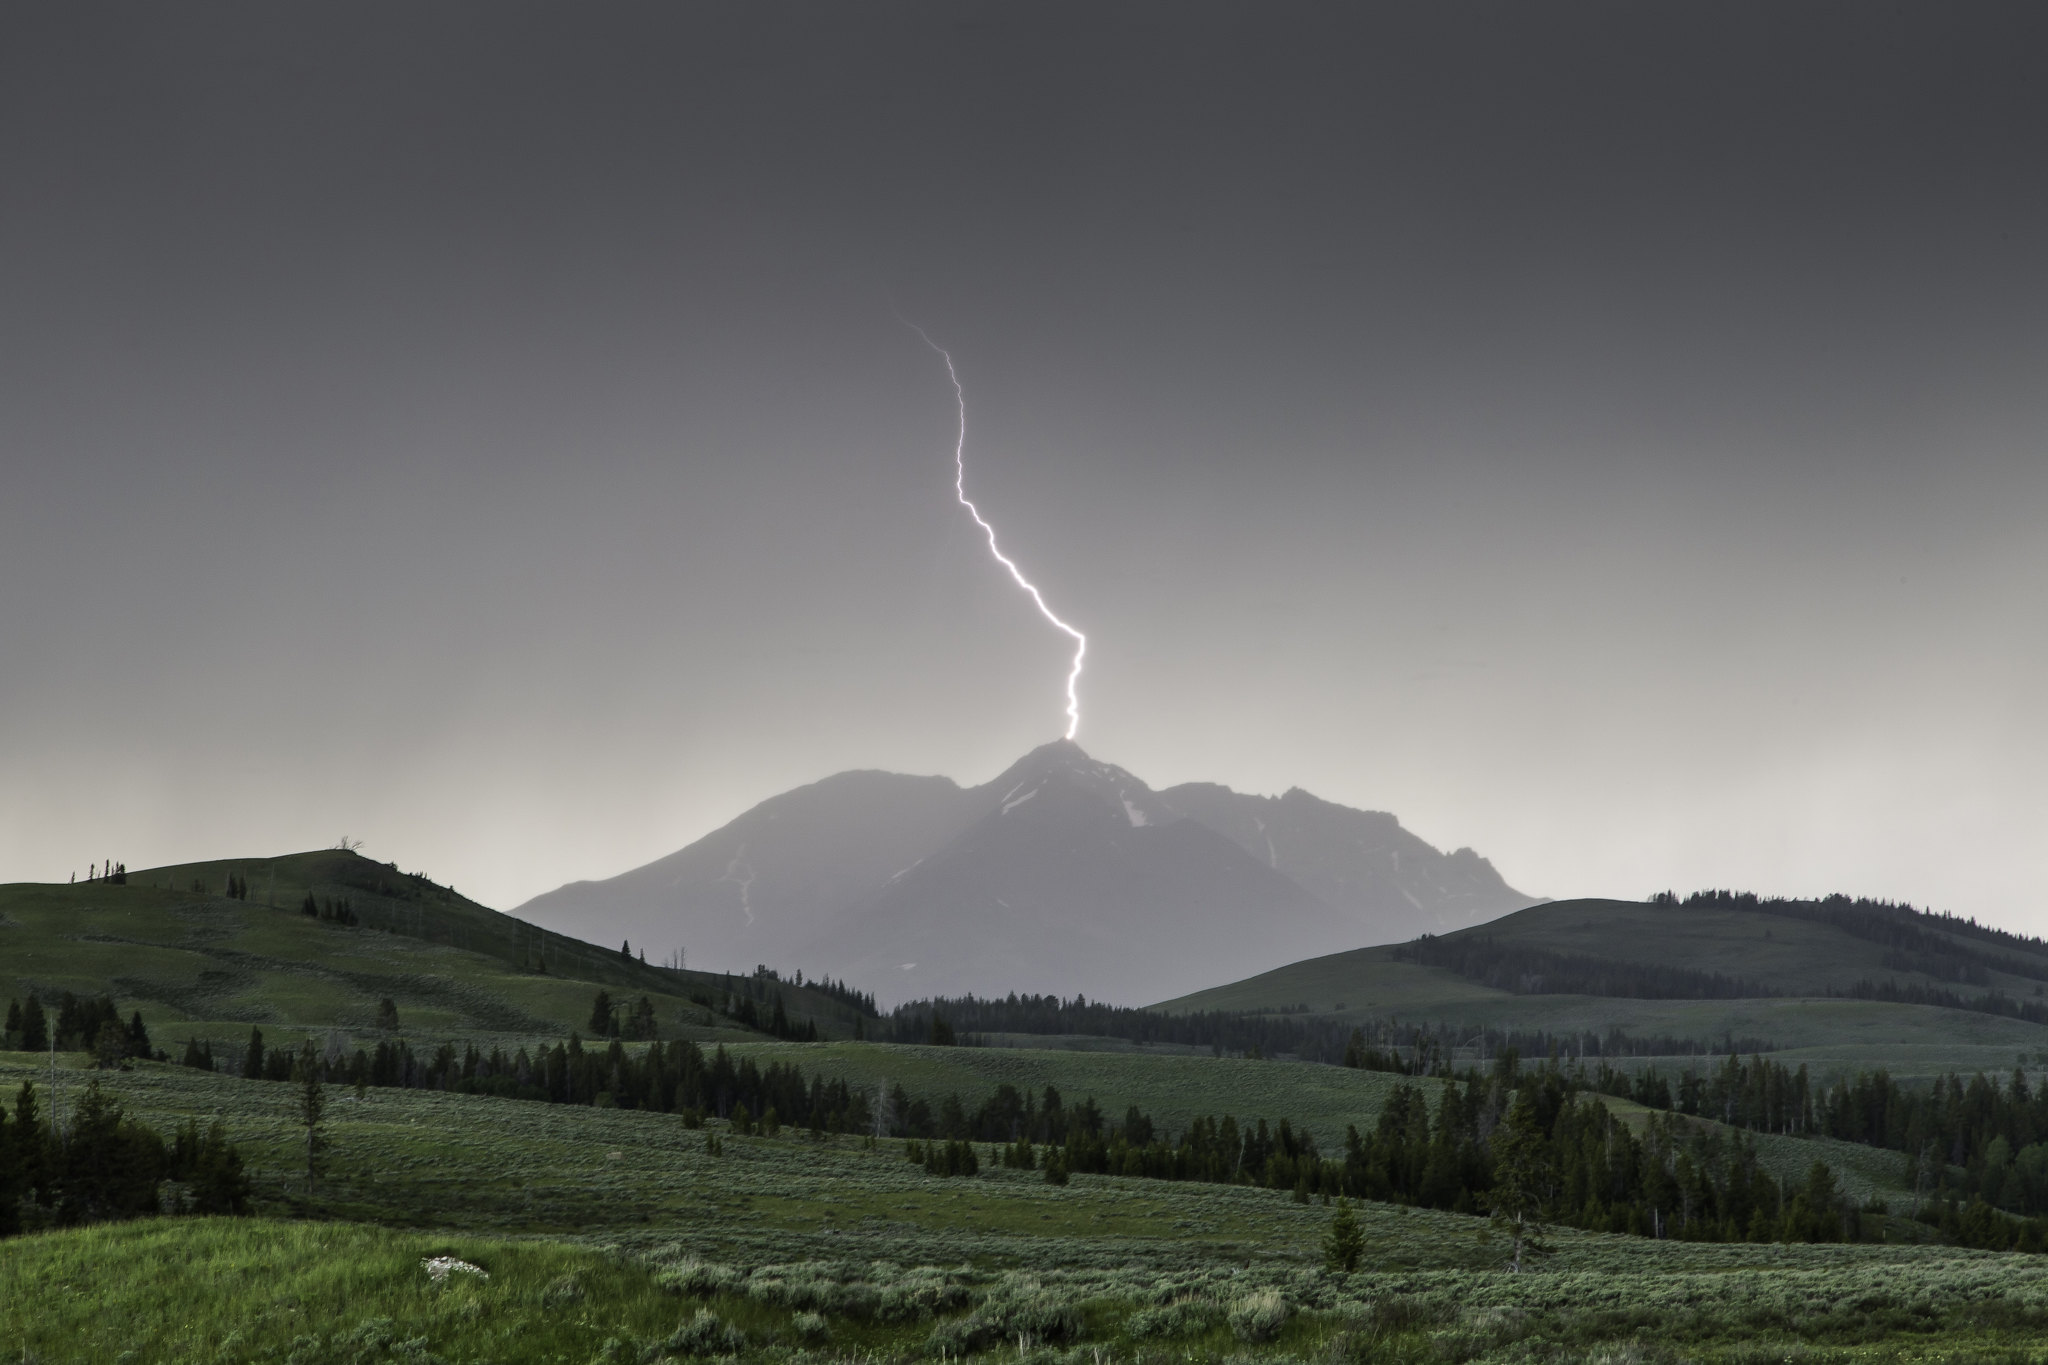 lightning strike on mountain peak